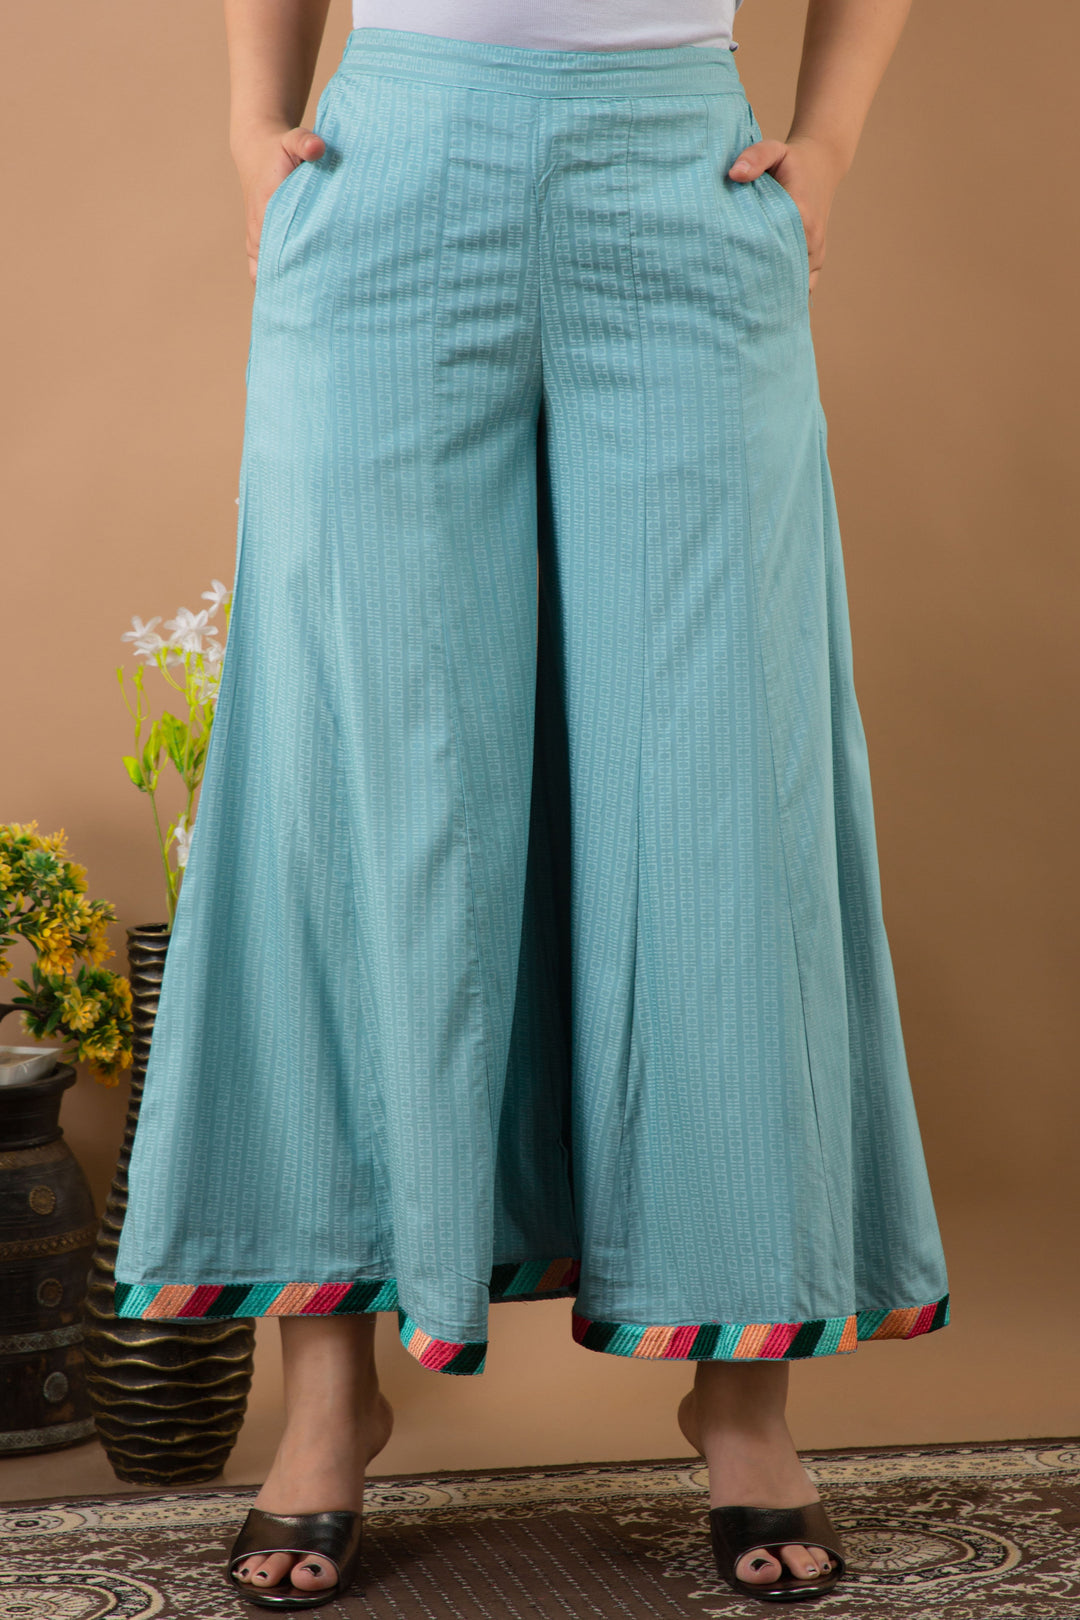 Women Turquoise Rayon Ethnic Set